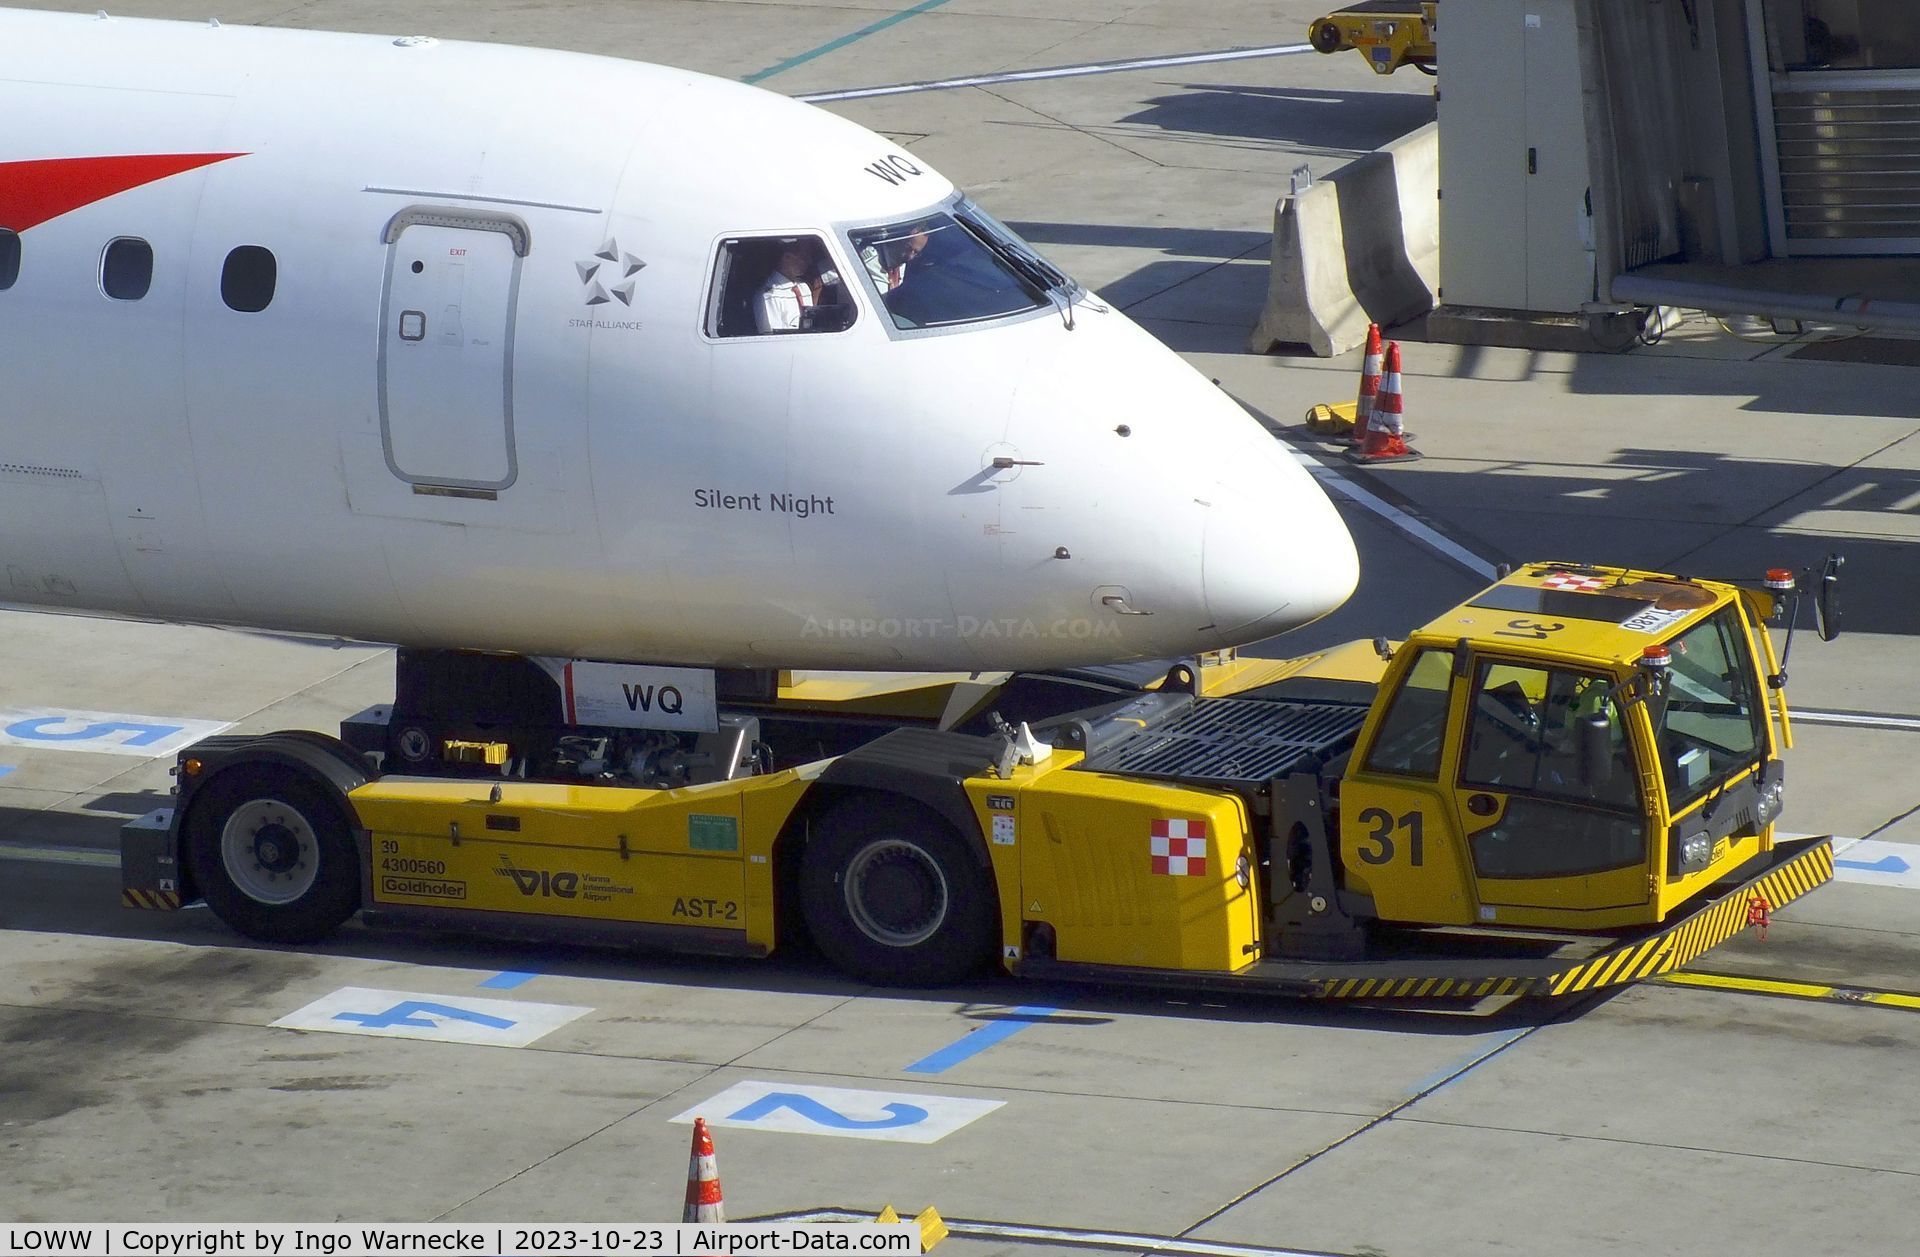 Vienna International Airport, Vienna Austria (LOWW) - pushback tug in action at Wien airport